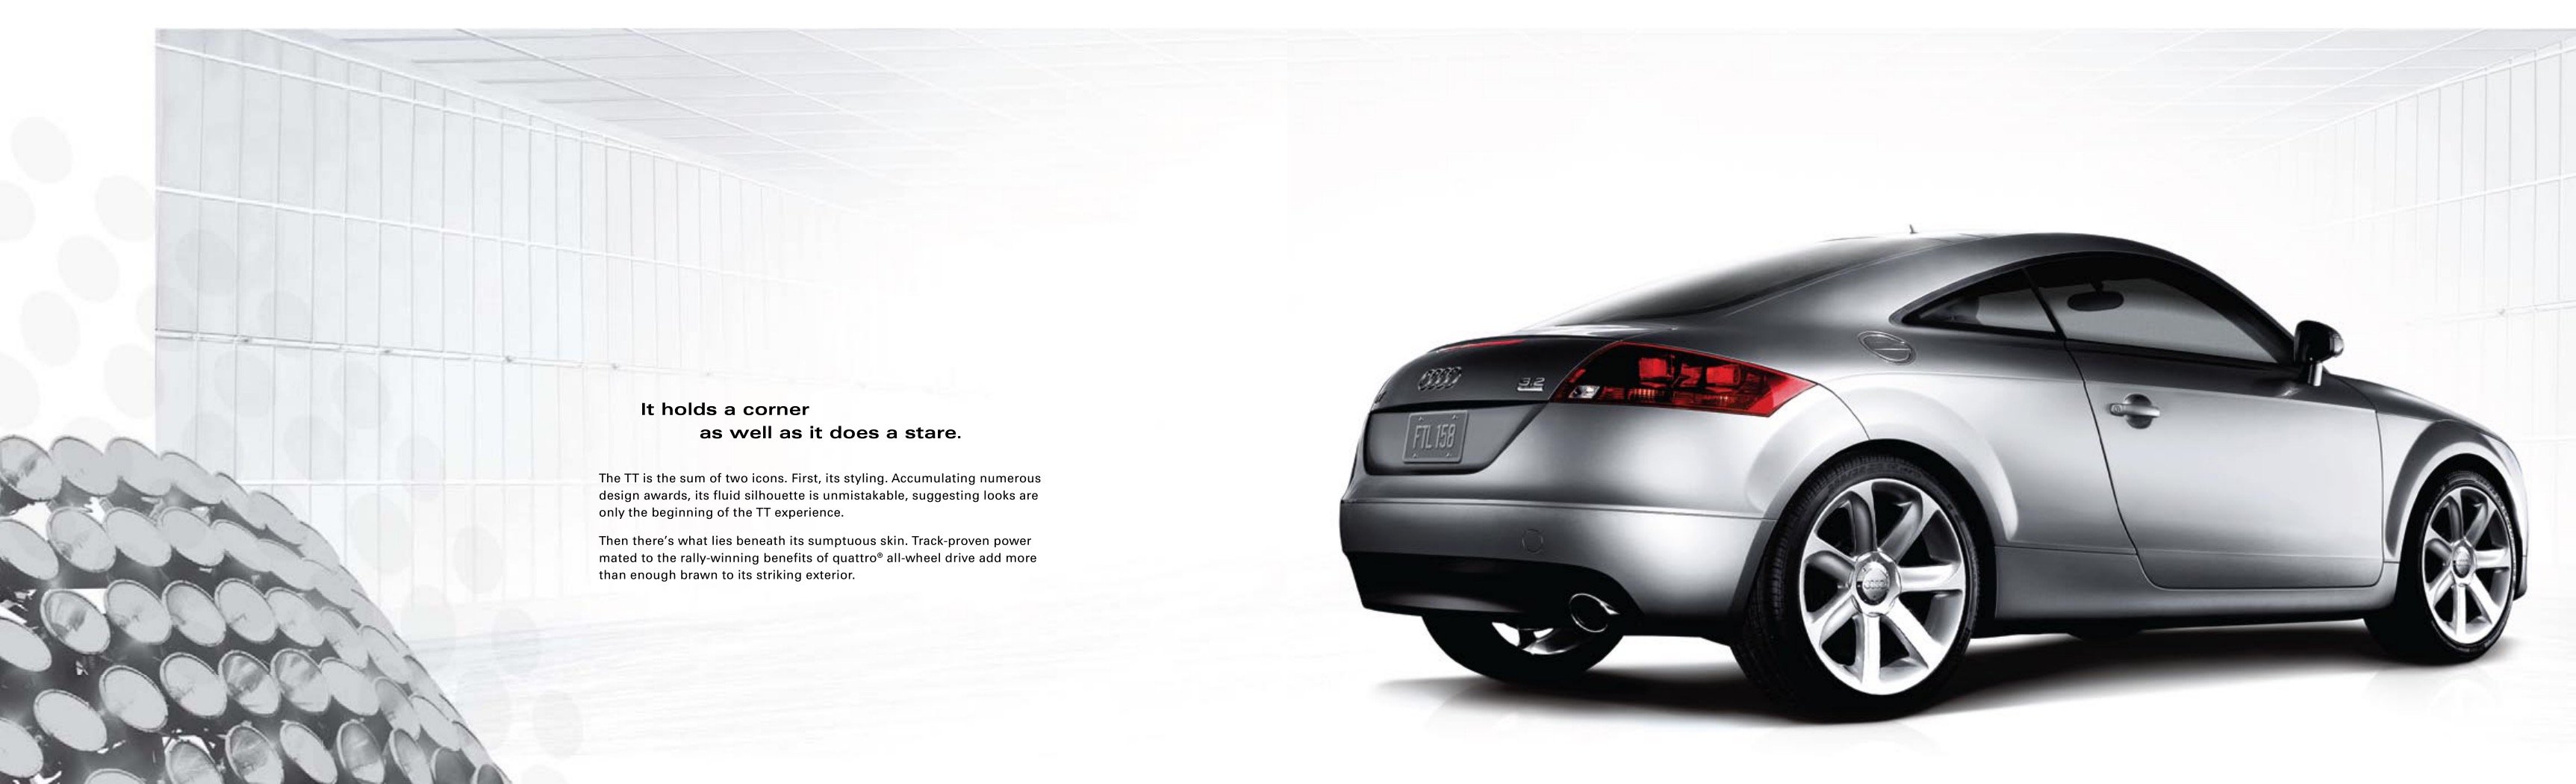 2009 Audi TT Brochure Page 1